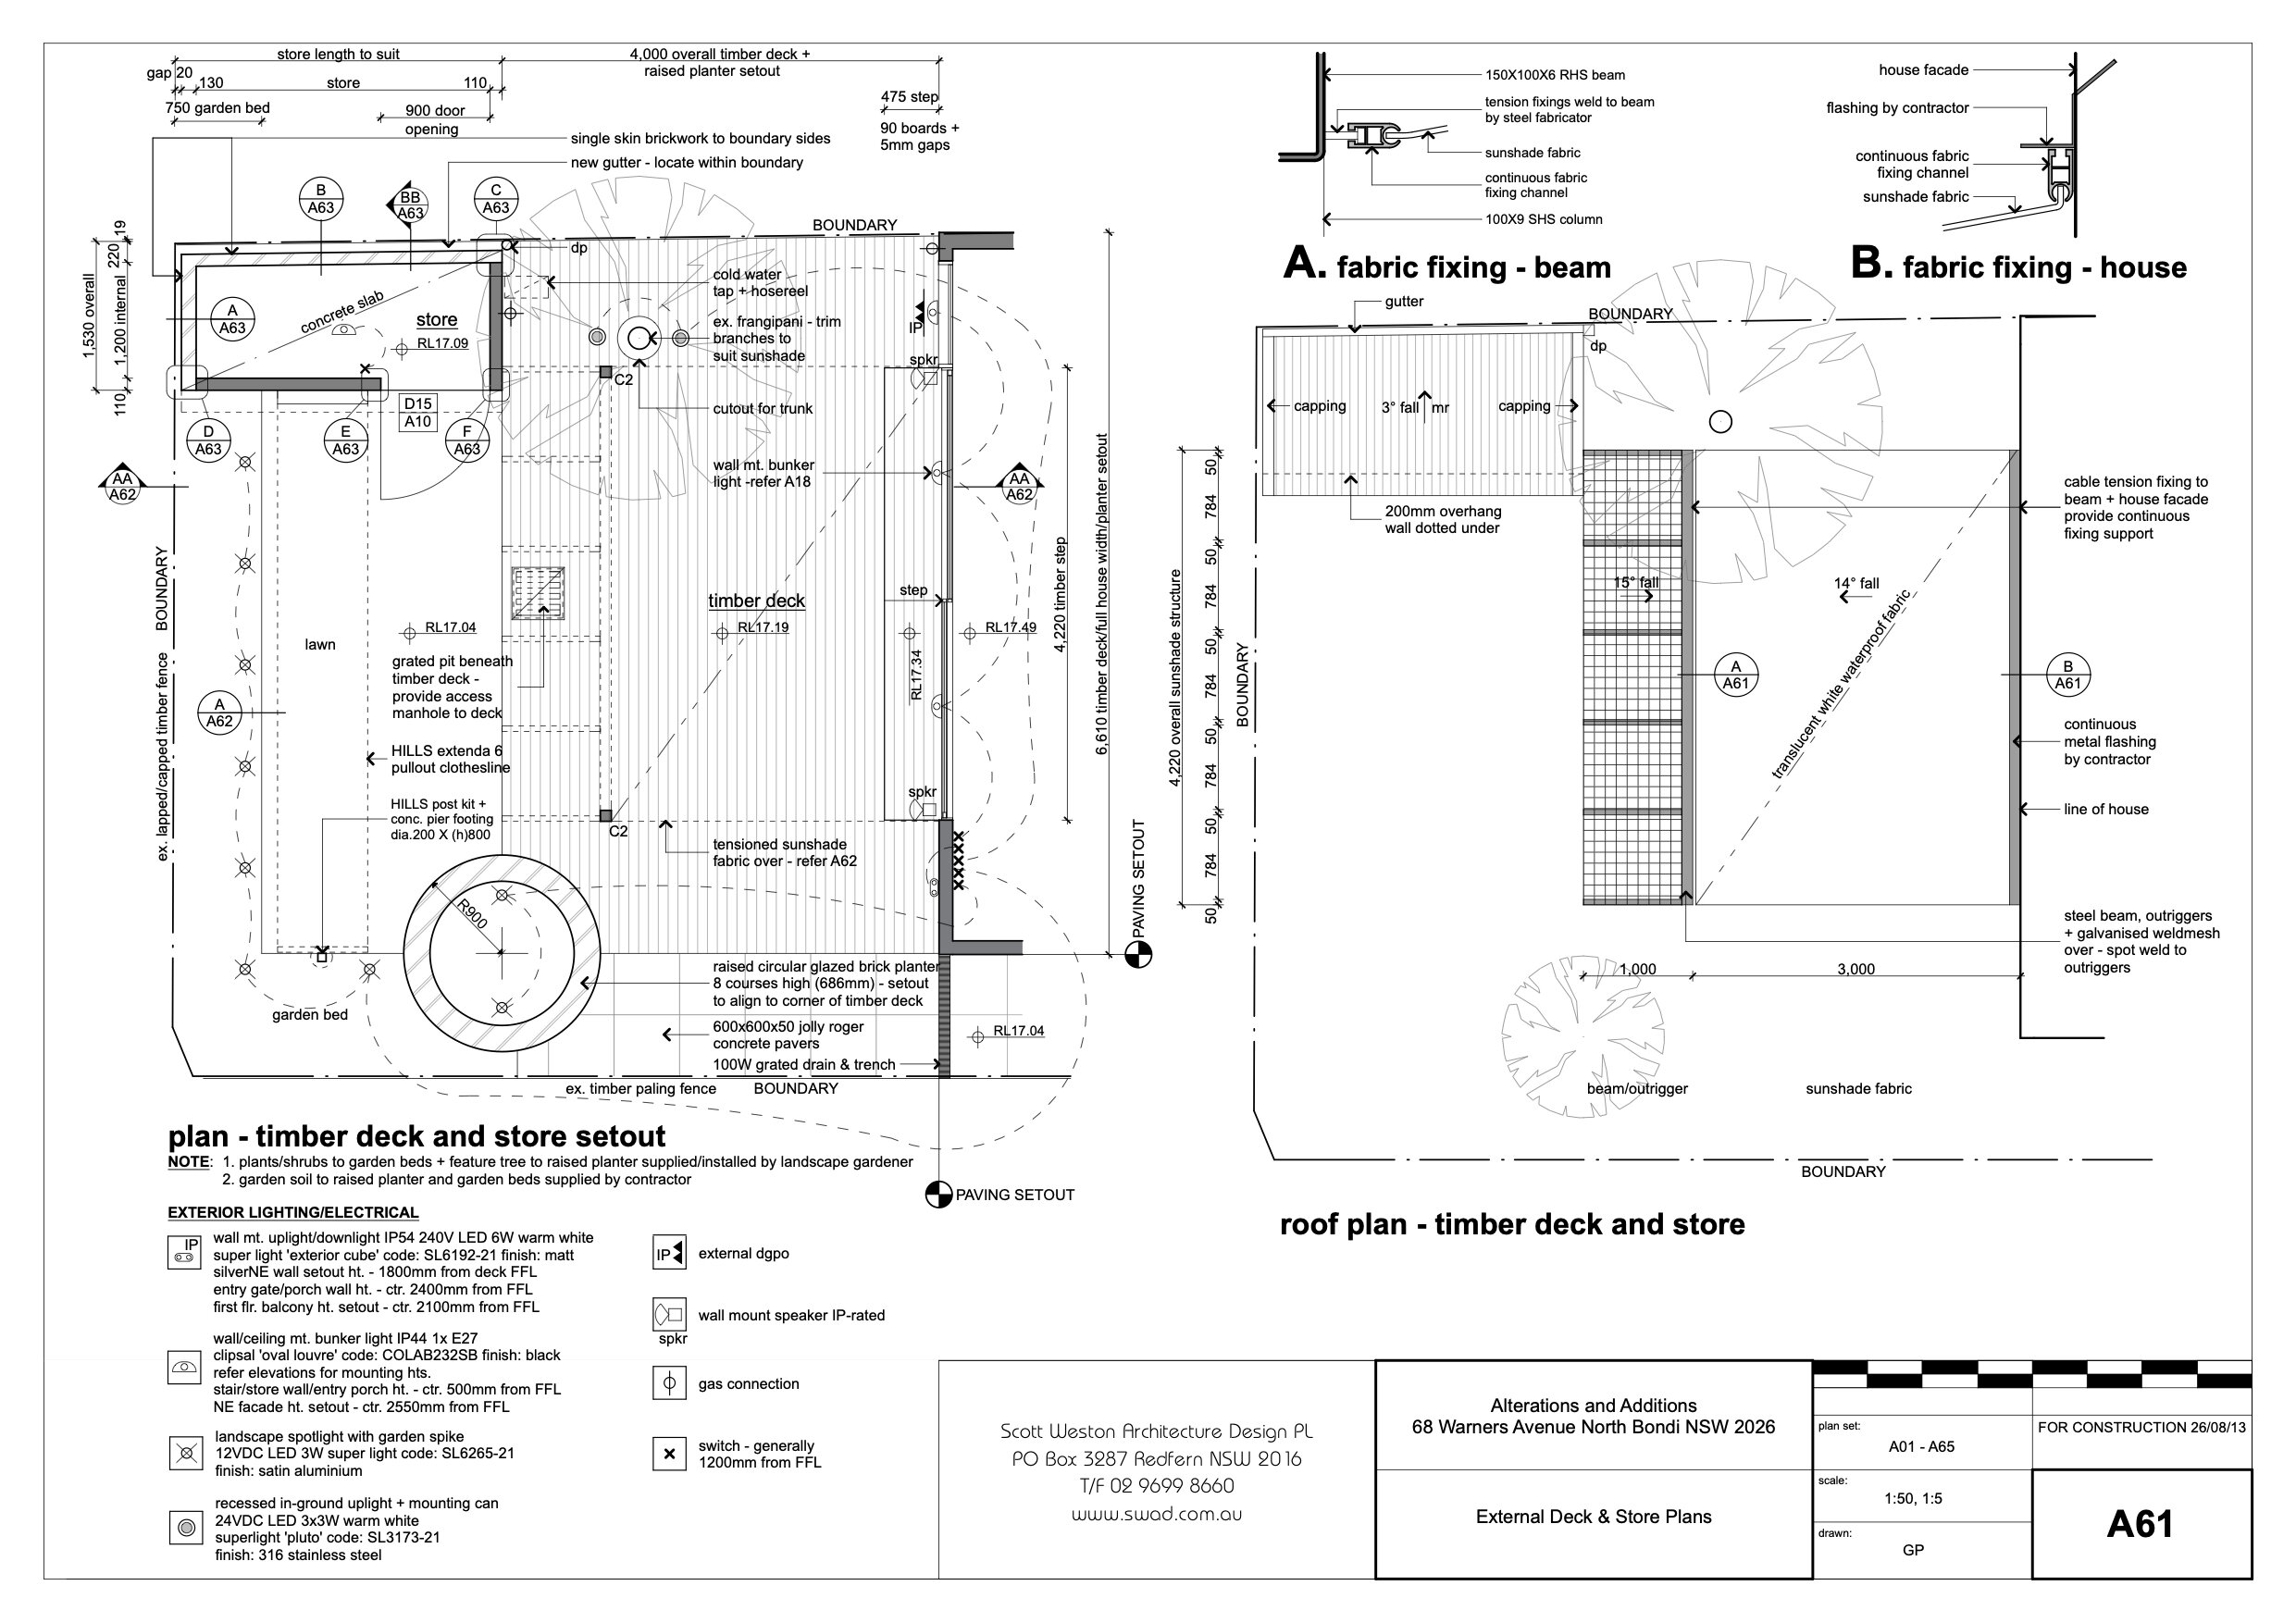 A61 External Deck & Store Plans.jpg